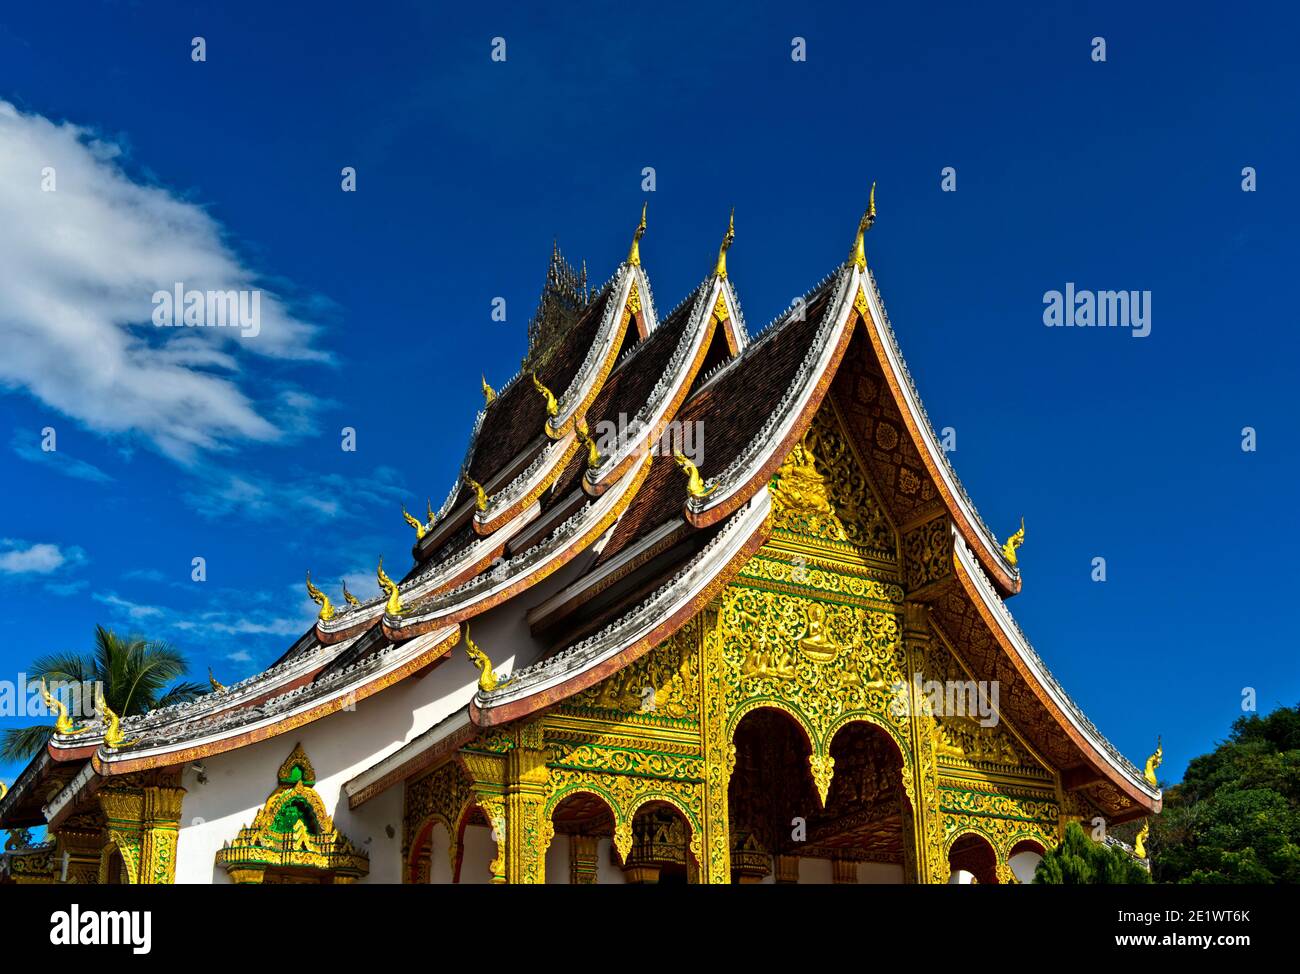 Toit à plusieurs niveaux de style thaïlandais orné de finals naga stylisés aux extrémités du toit, temple Haw Pha Bang, Luang Prabang, Laos Banque D'Images